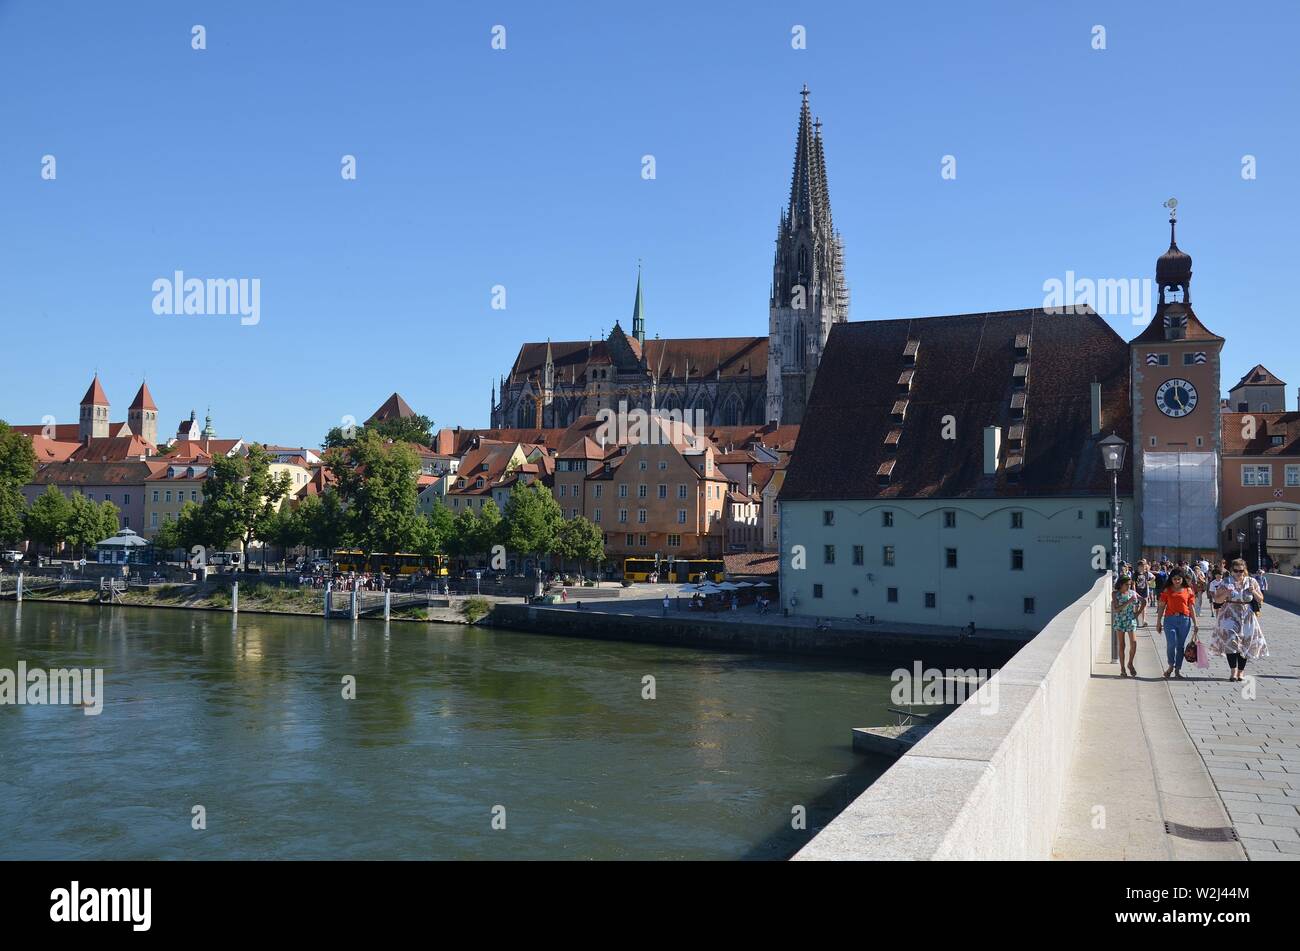 Regensburg, Oberpfalz, Bayern: historische Stadt an der Donau: Blick von der Steinernen Brücke auf die Altstadt und den Dom Foto de stock